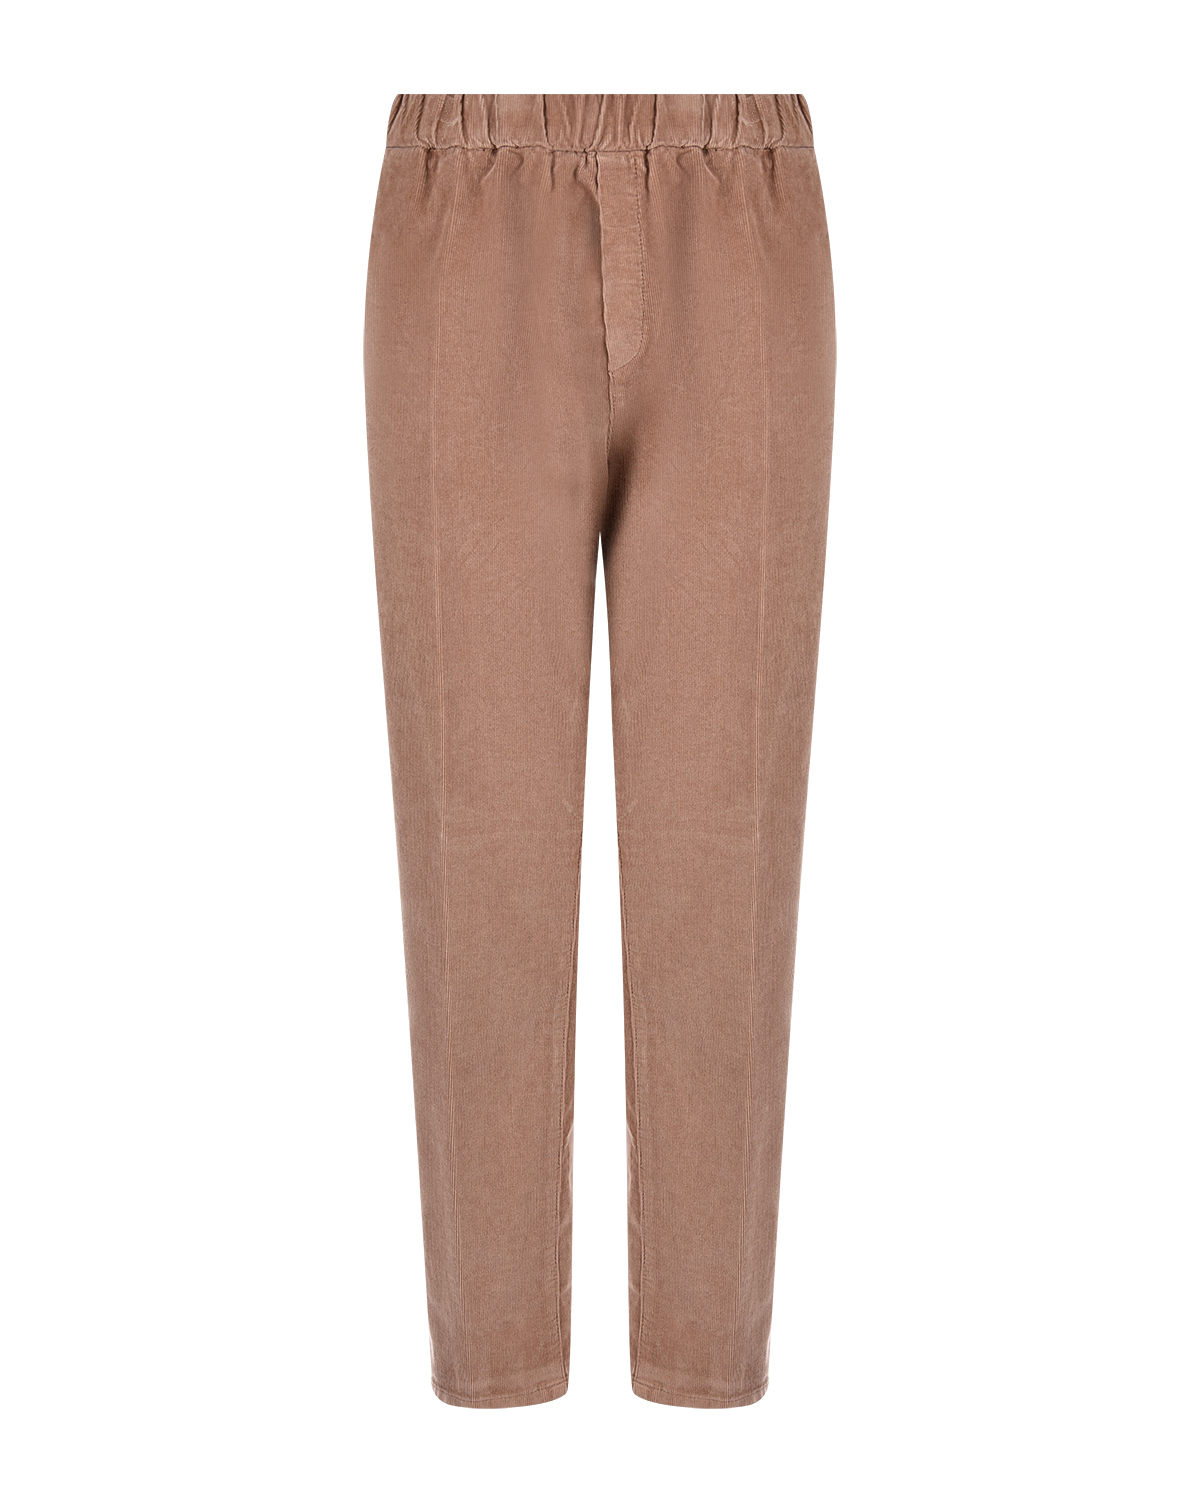 Коричневые брюки из вельвета Panicale, размер 40, цвет коричневый - фото 1